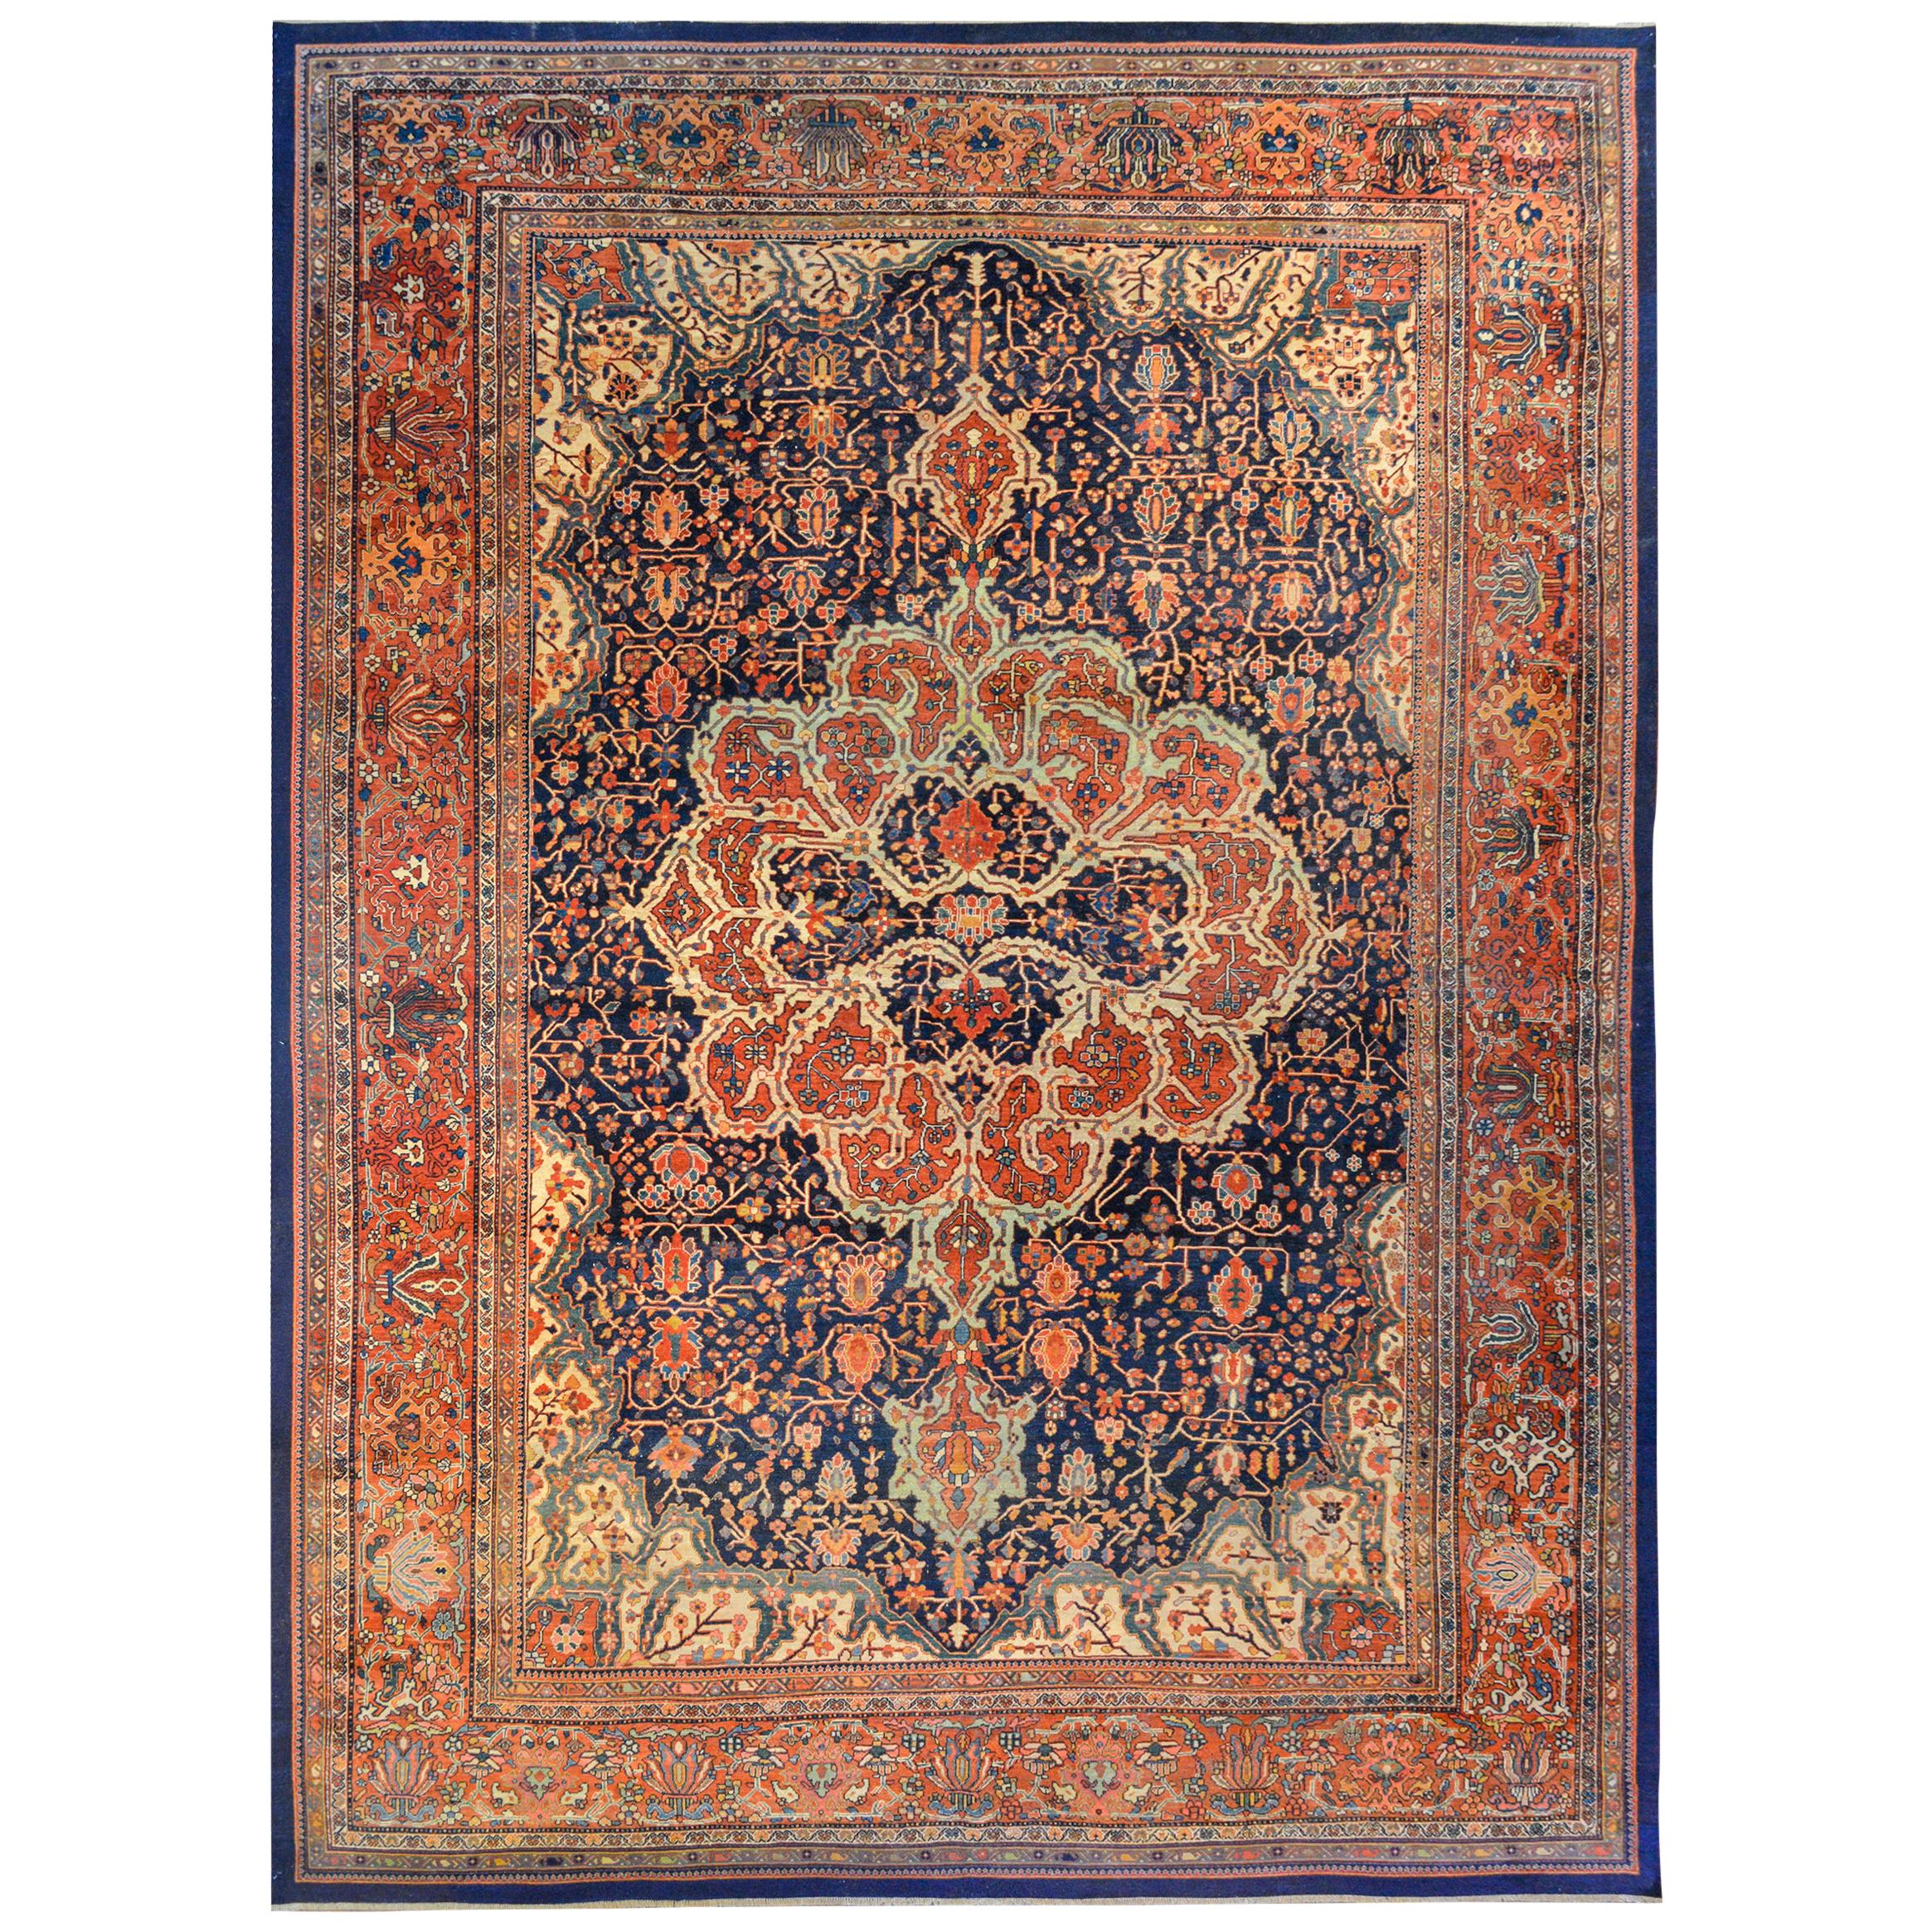 Magnifique tapis sarouk de Farahan du début du 20e siècle